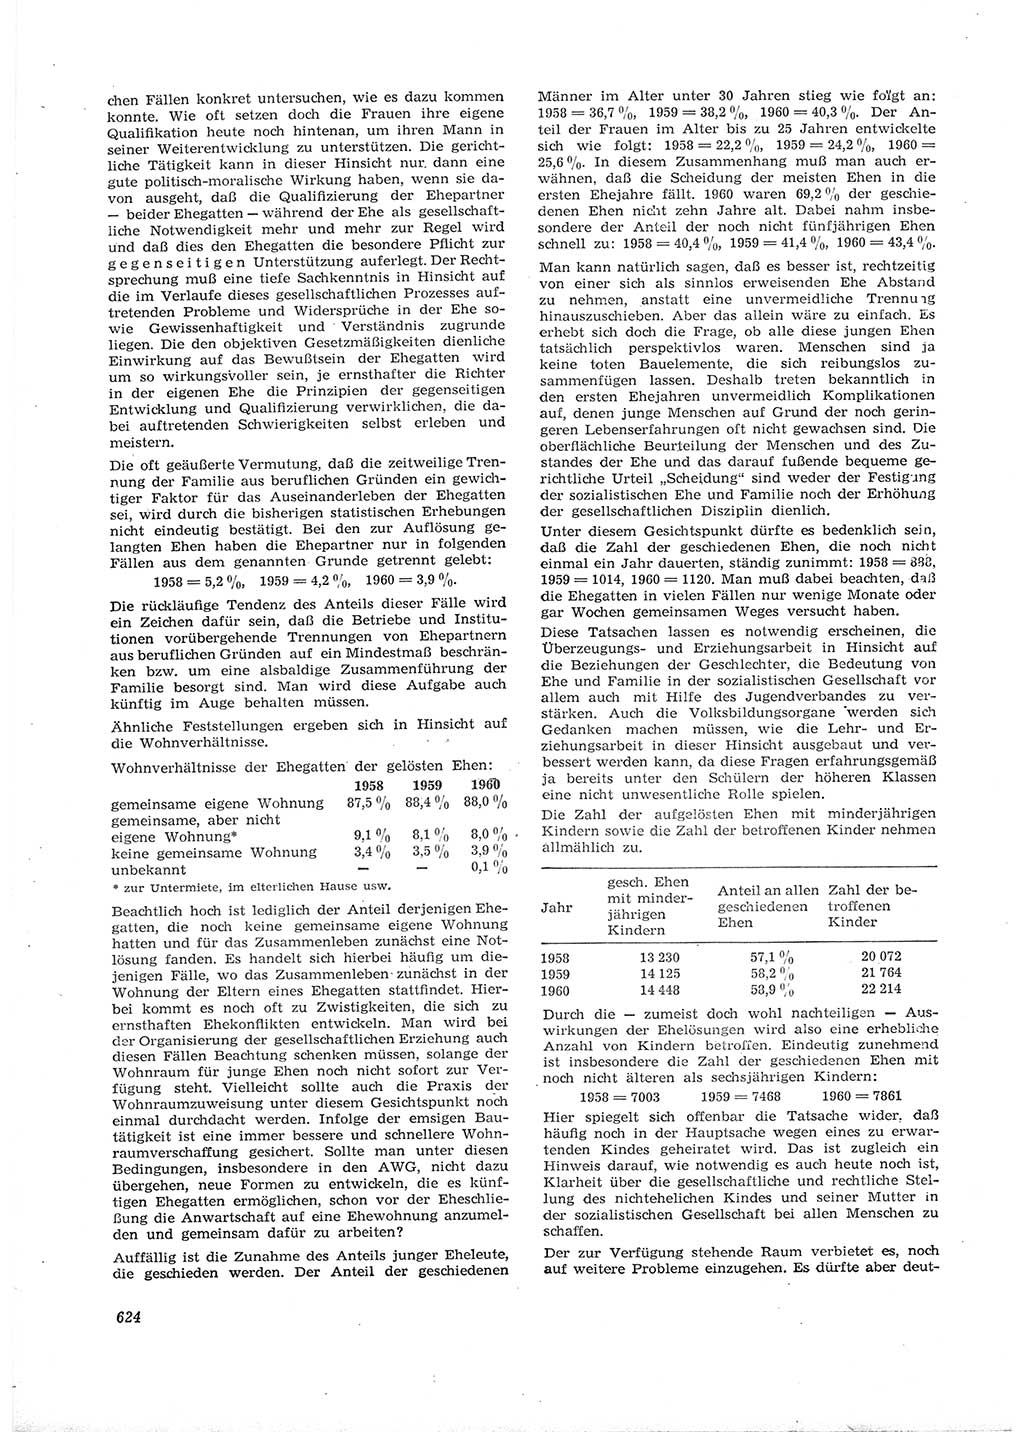 Neue Justiz (NJ), Zeitschrift für Recht und Rechtswissenschaft [Deutsche Demokratische Republik (DDR)], 16. Jahrgang 1962, Seite 624 (NJ DDR 1962, S. 624)